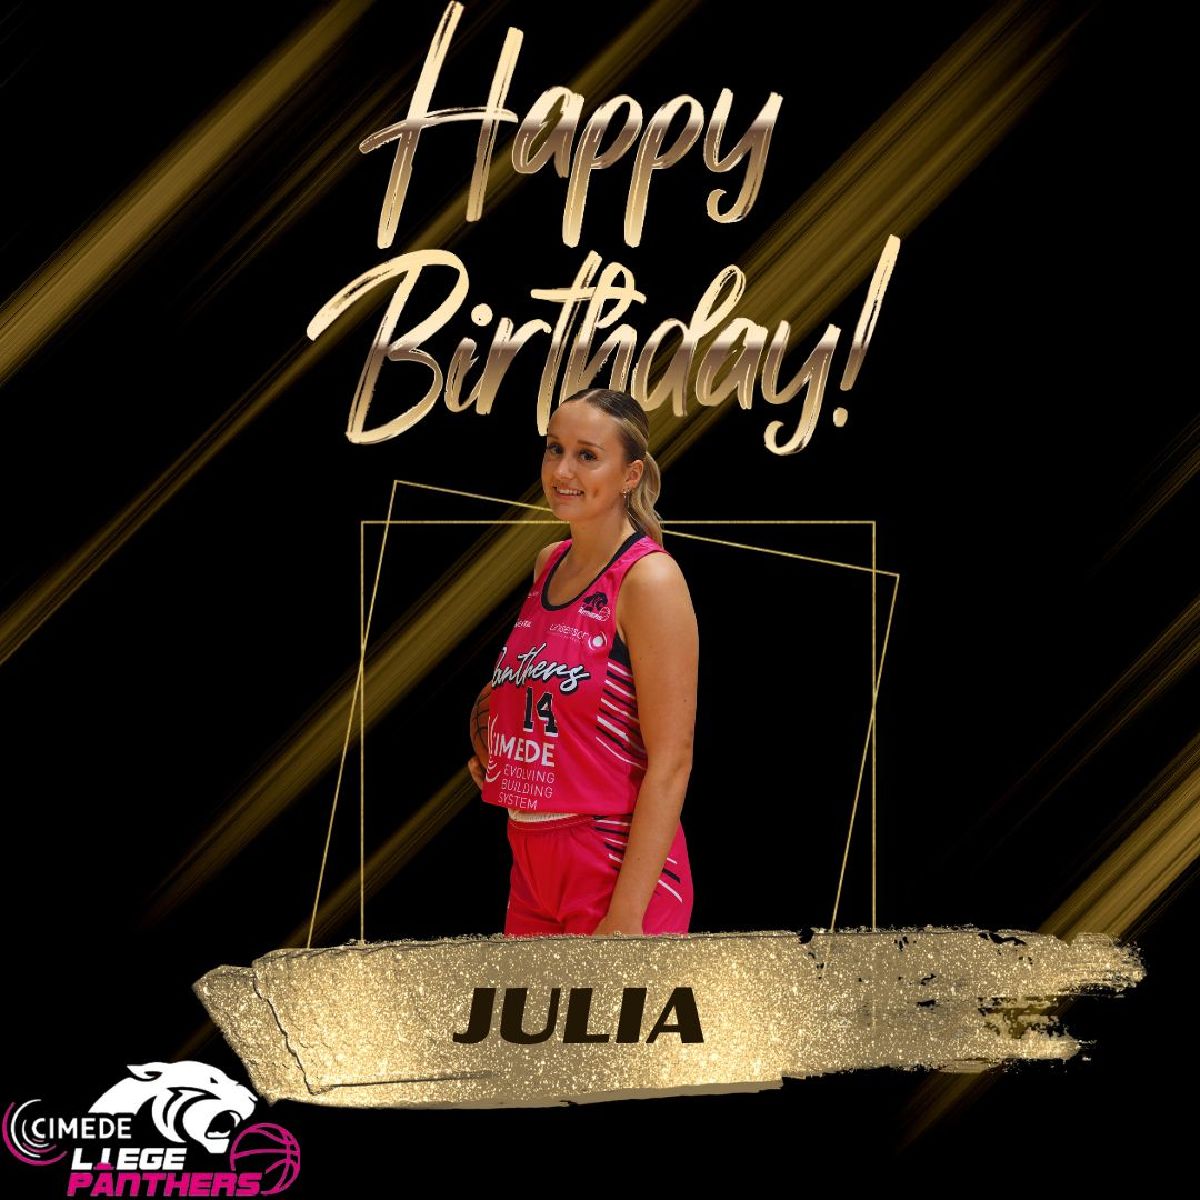 Bon anniversaire Julia!